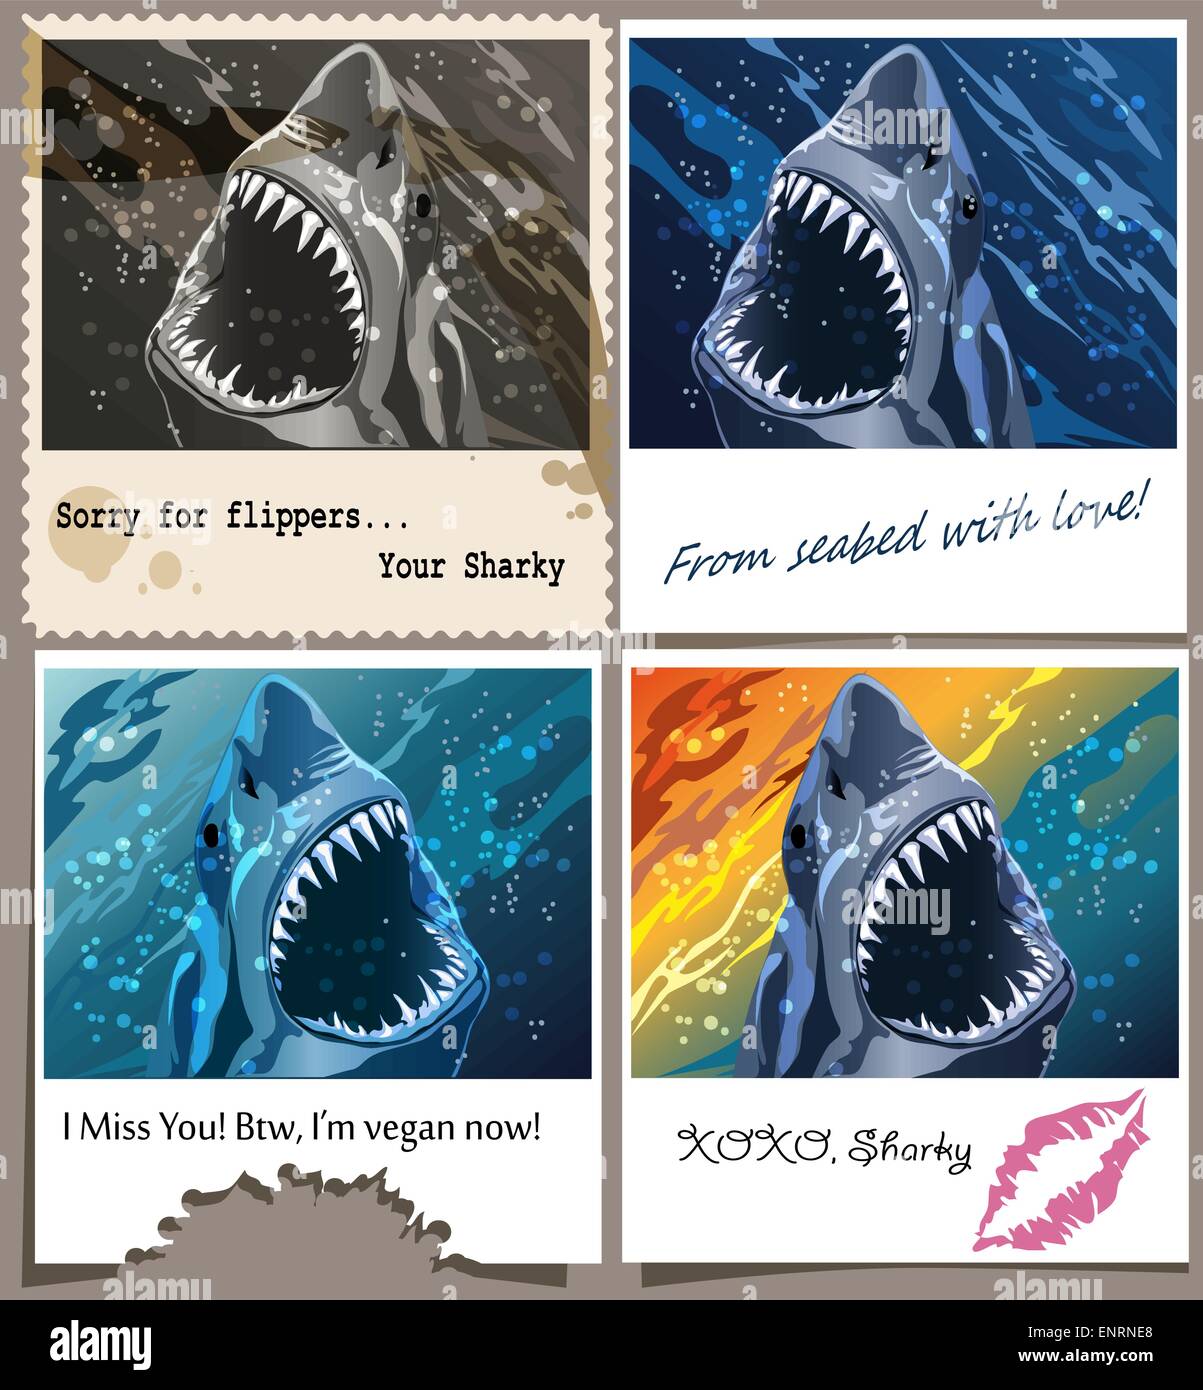 Le jeu contient quatre cartes postales avec le requin et messages humoristiques tirées de différents styles Illustration de Vecteur